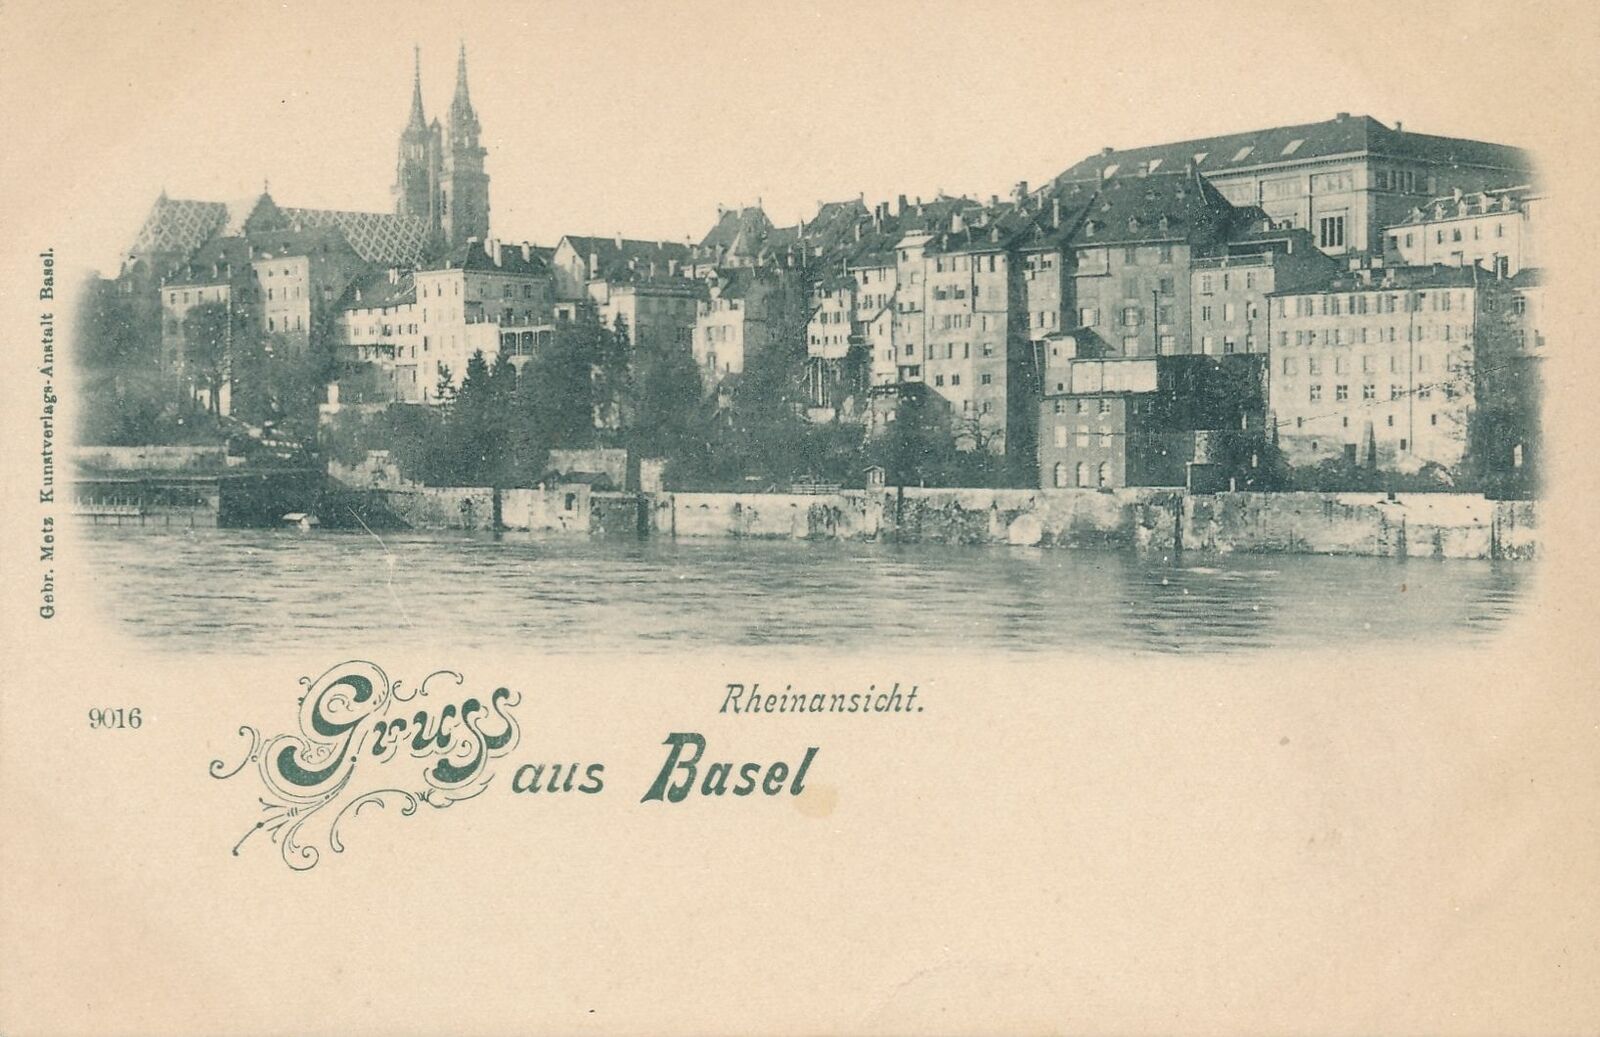 BASEL - Rheinansicht Gruss Aus Basel Rhine View - Switzerland - udb (pre 1908)